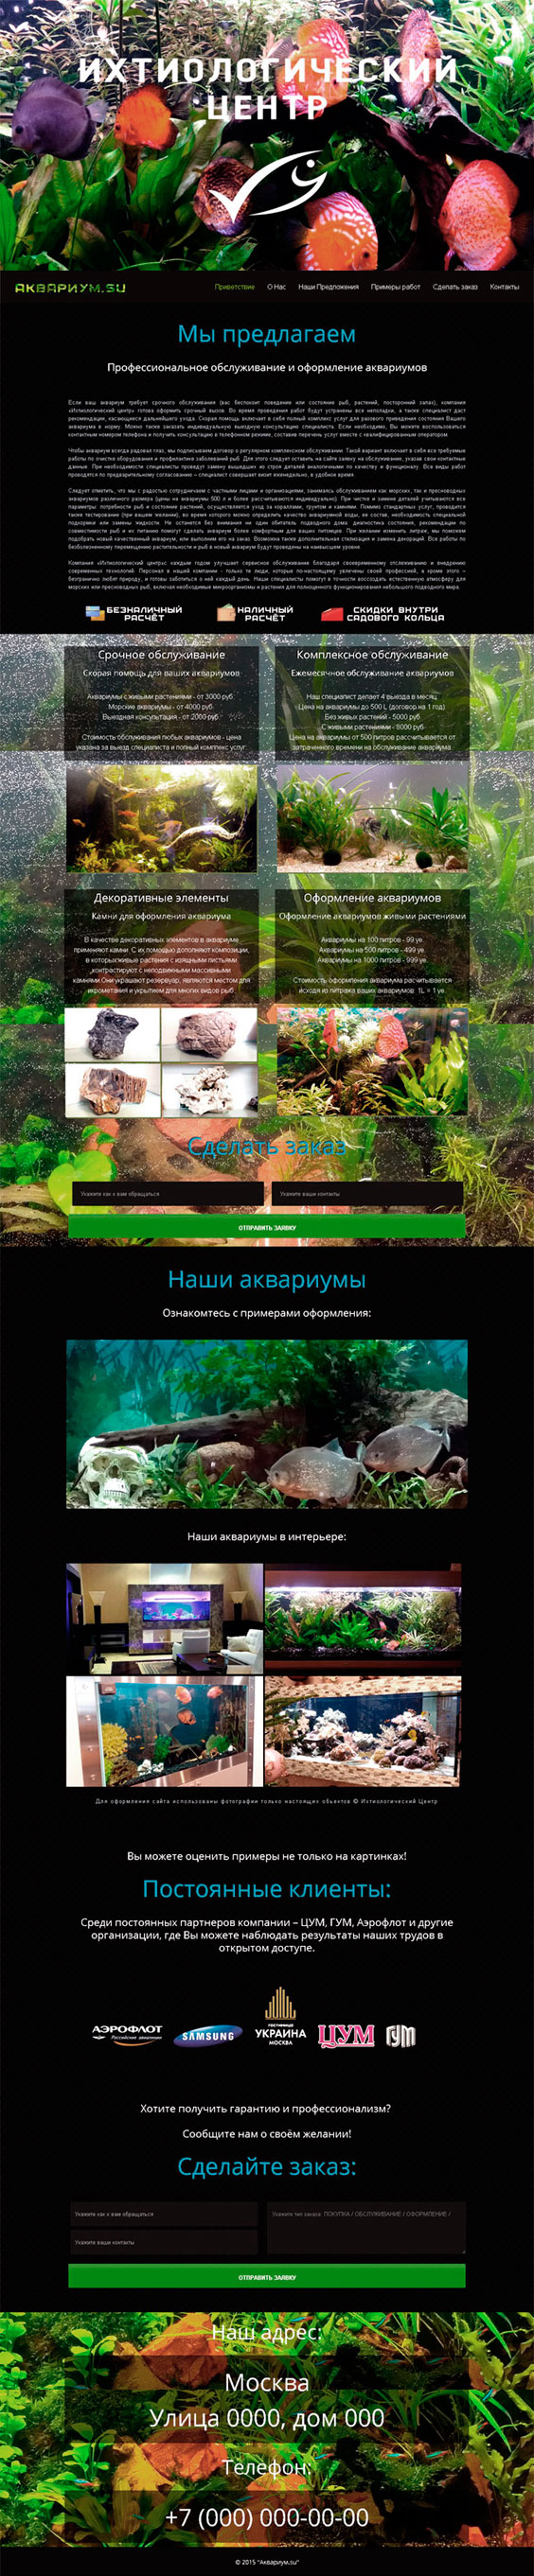 Сайт ихтиологов, услуги по аквариумам